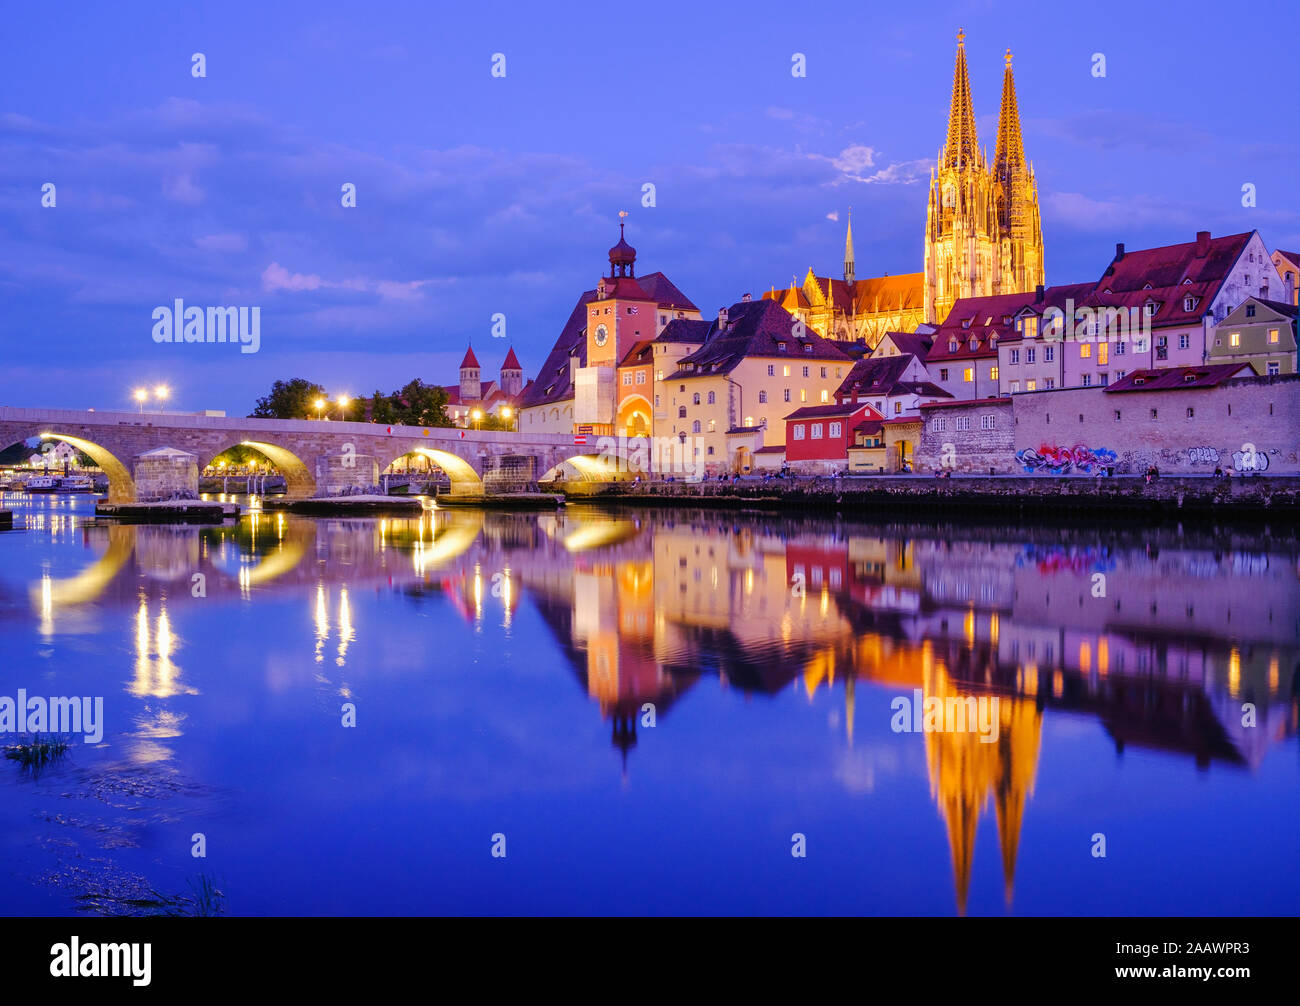 Ponte di pietra sul fiume Danubio in città illuminata al crepuscolo, Regensburg, Alto Palatinato, Baviera, Germania Foto Stock